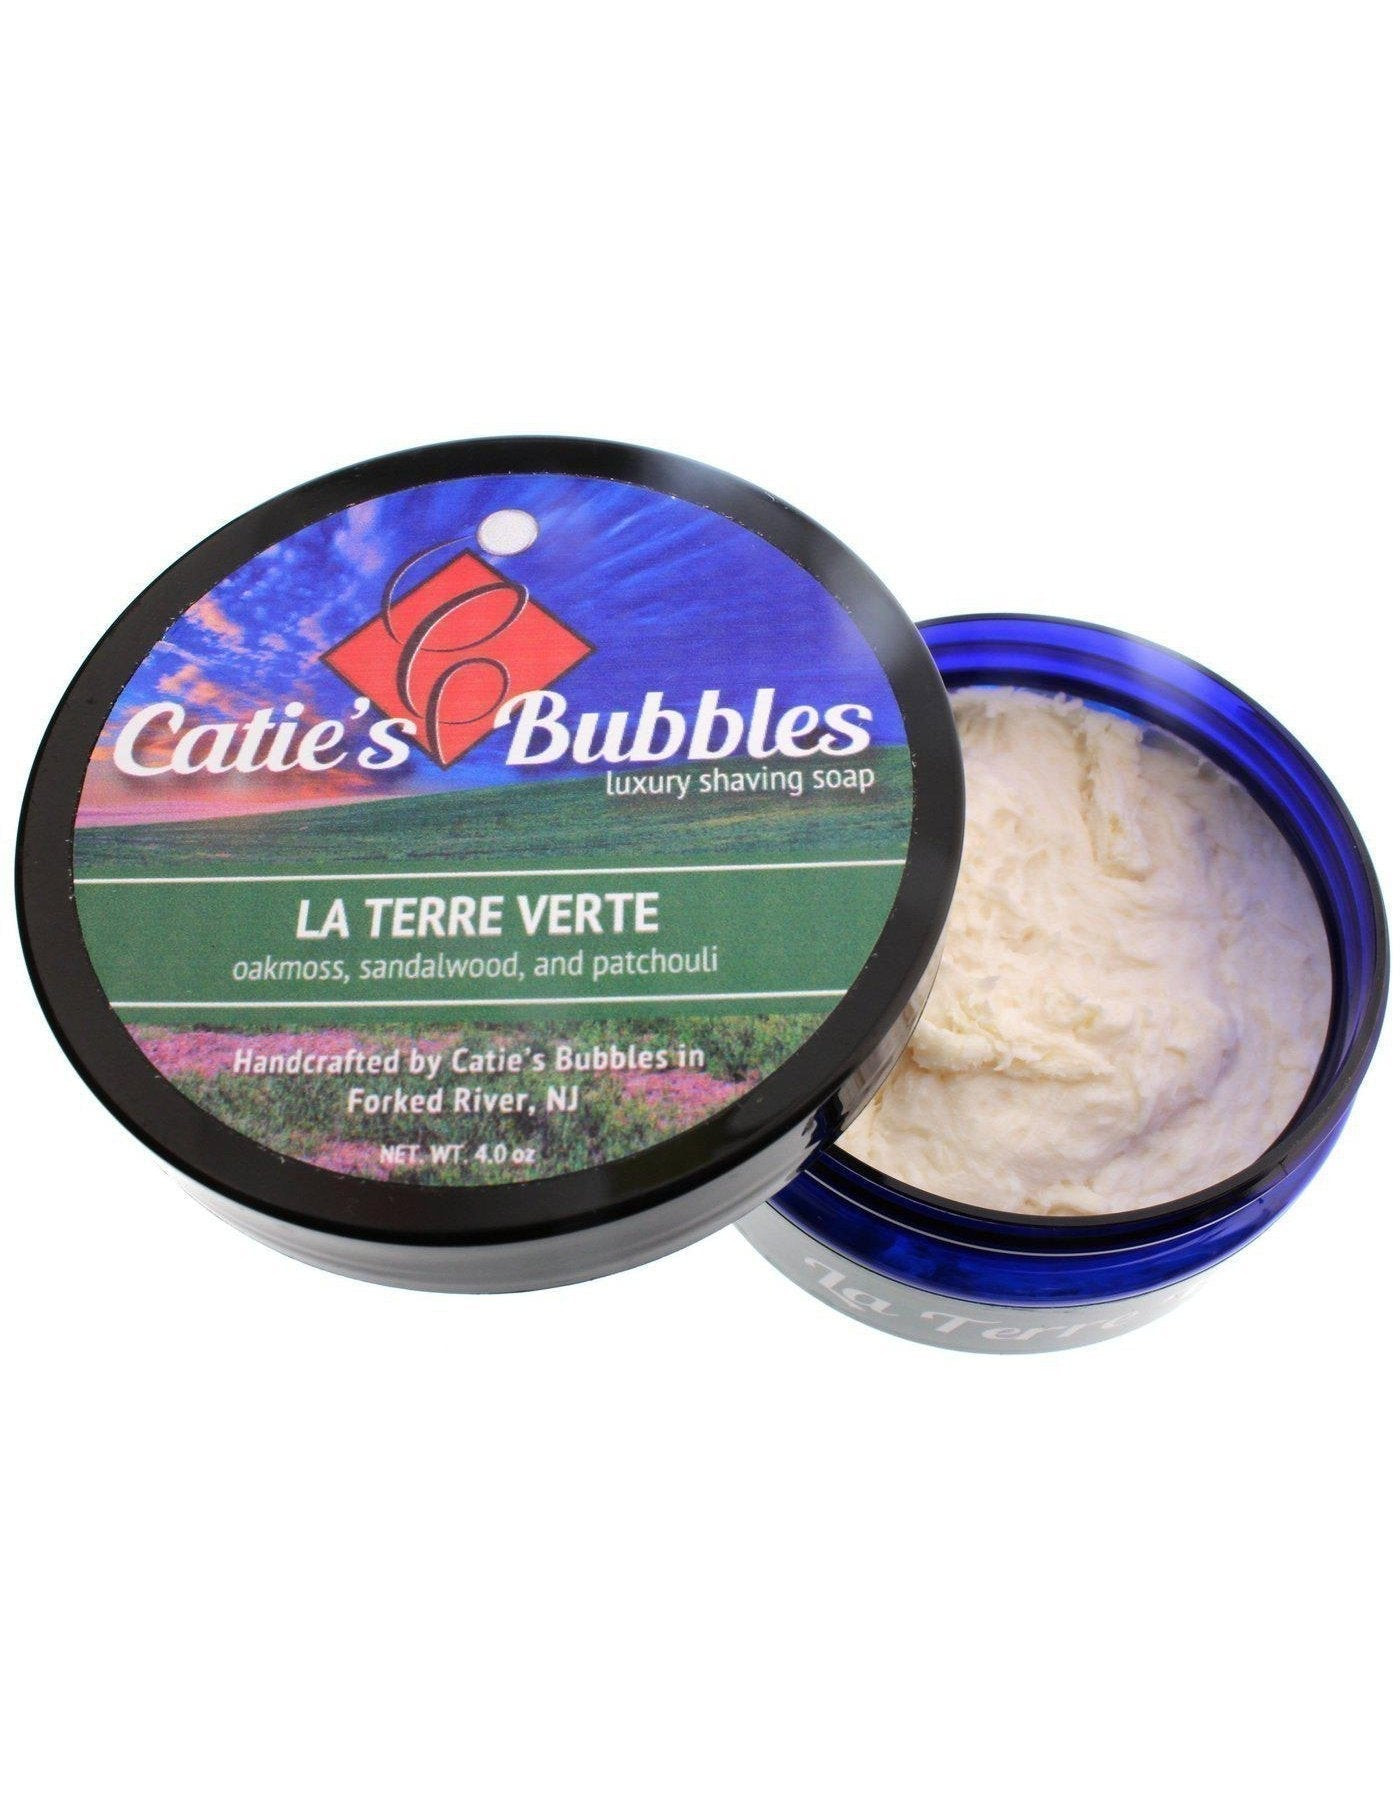 Product image 1 for Catie's Bubbles Shaving Soap, La Terre Verte, 4oz.